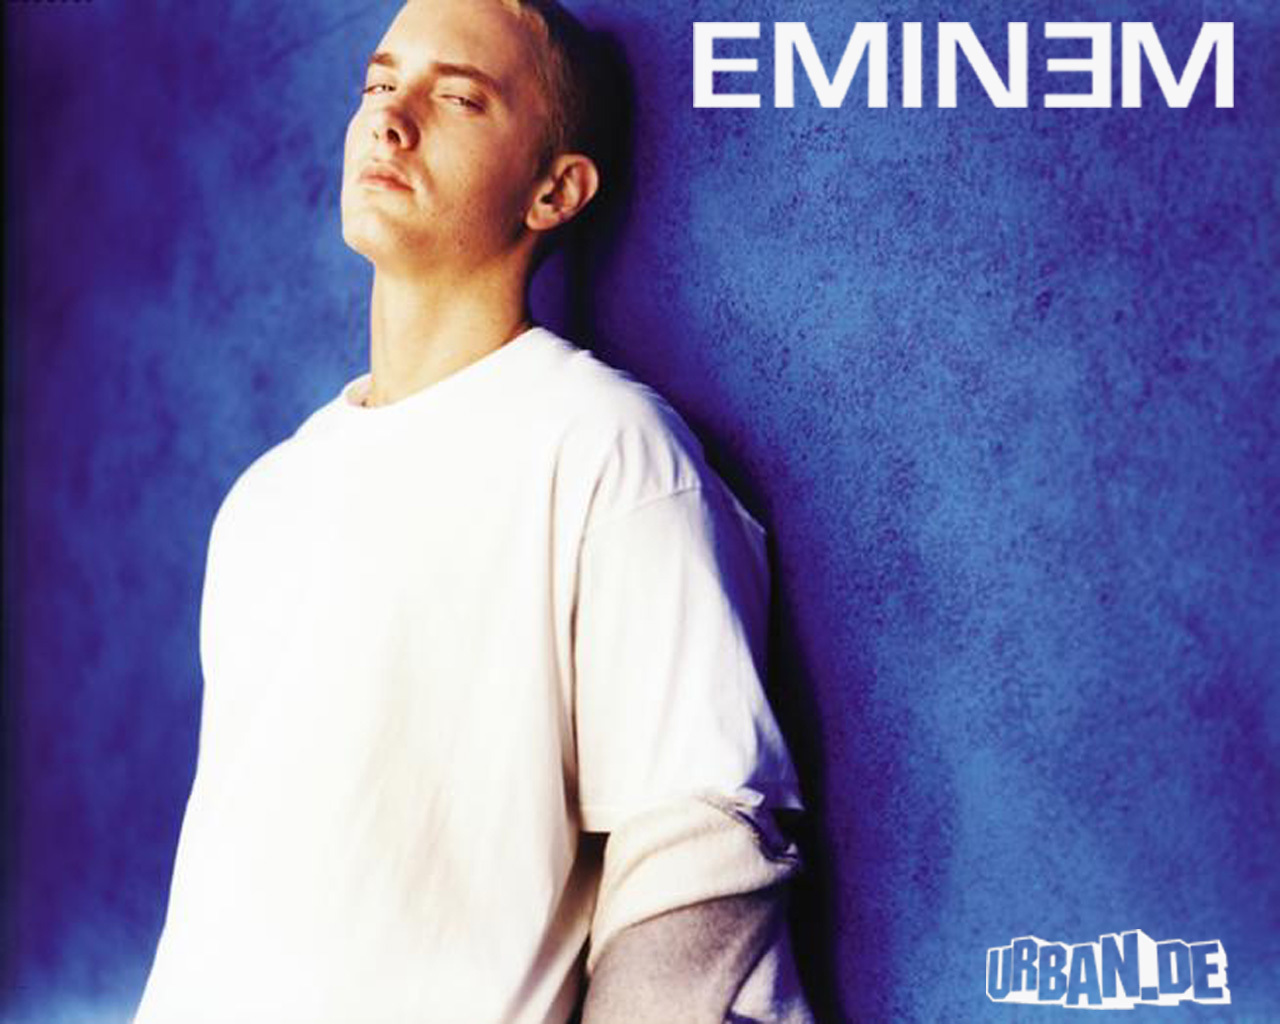 Descarga gratuita de fondo de pantalla para móvil de Personas, Hombres, Música, Eminem, Artistas.